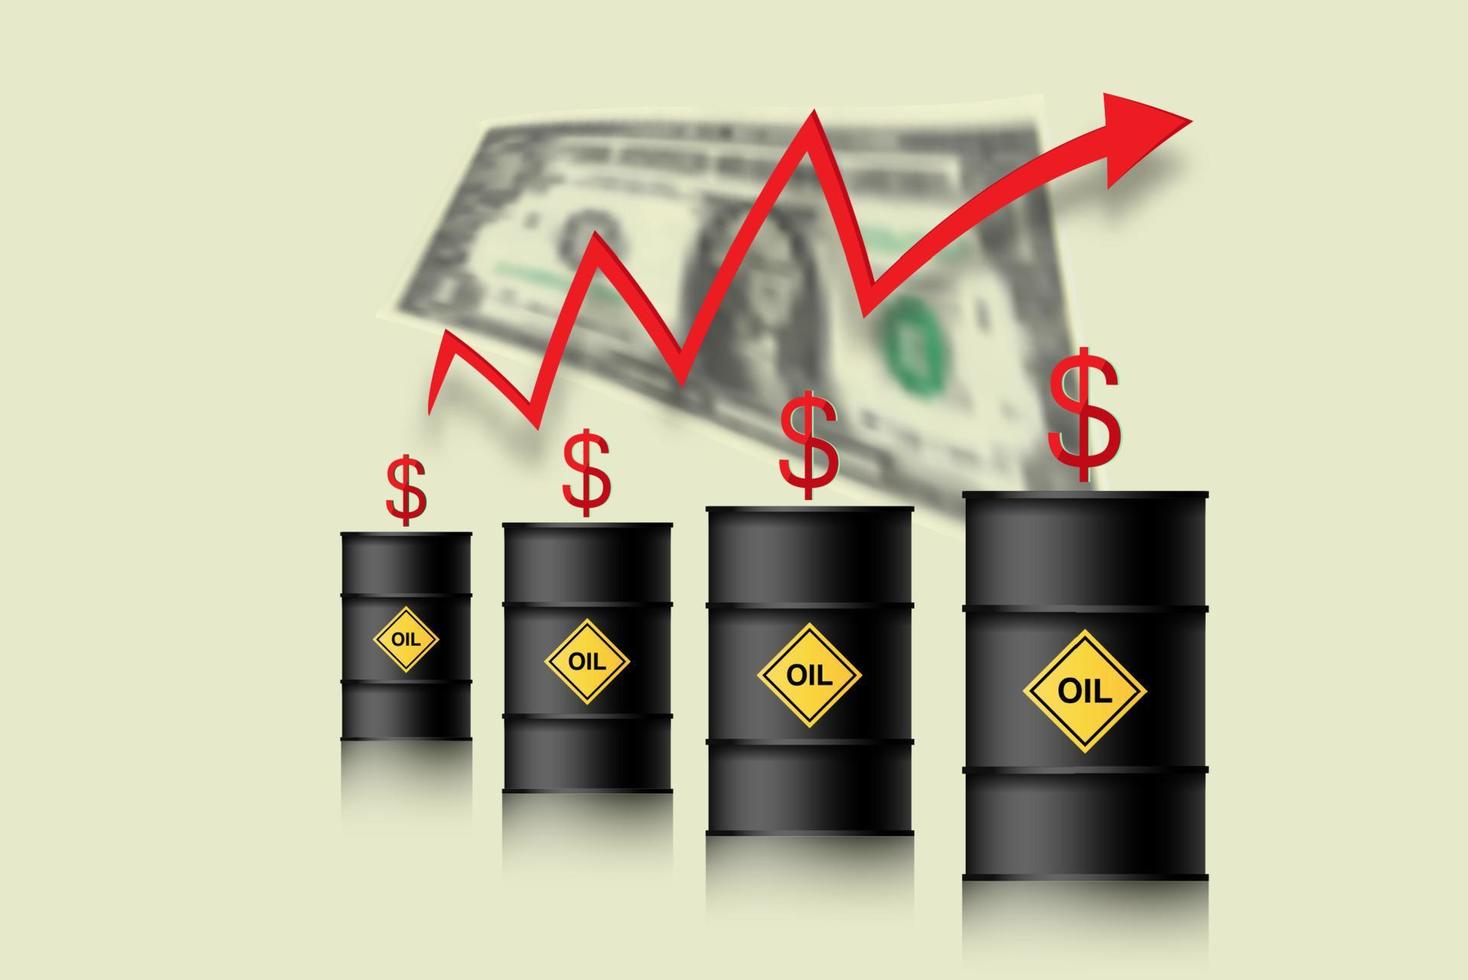 el precio del petróleo está subiendo. barriles de petróleo, dólar e infografía con una flecha roja hacia arriba. concepto de aumento de los precios del petróleo crudo, ilustración vectorial aislada en el fondo blanco vector